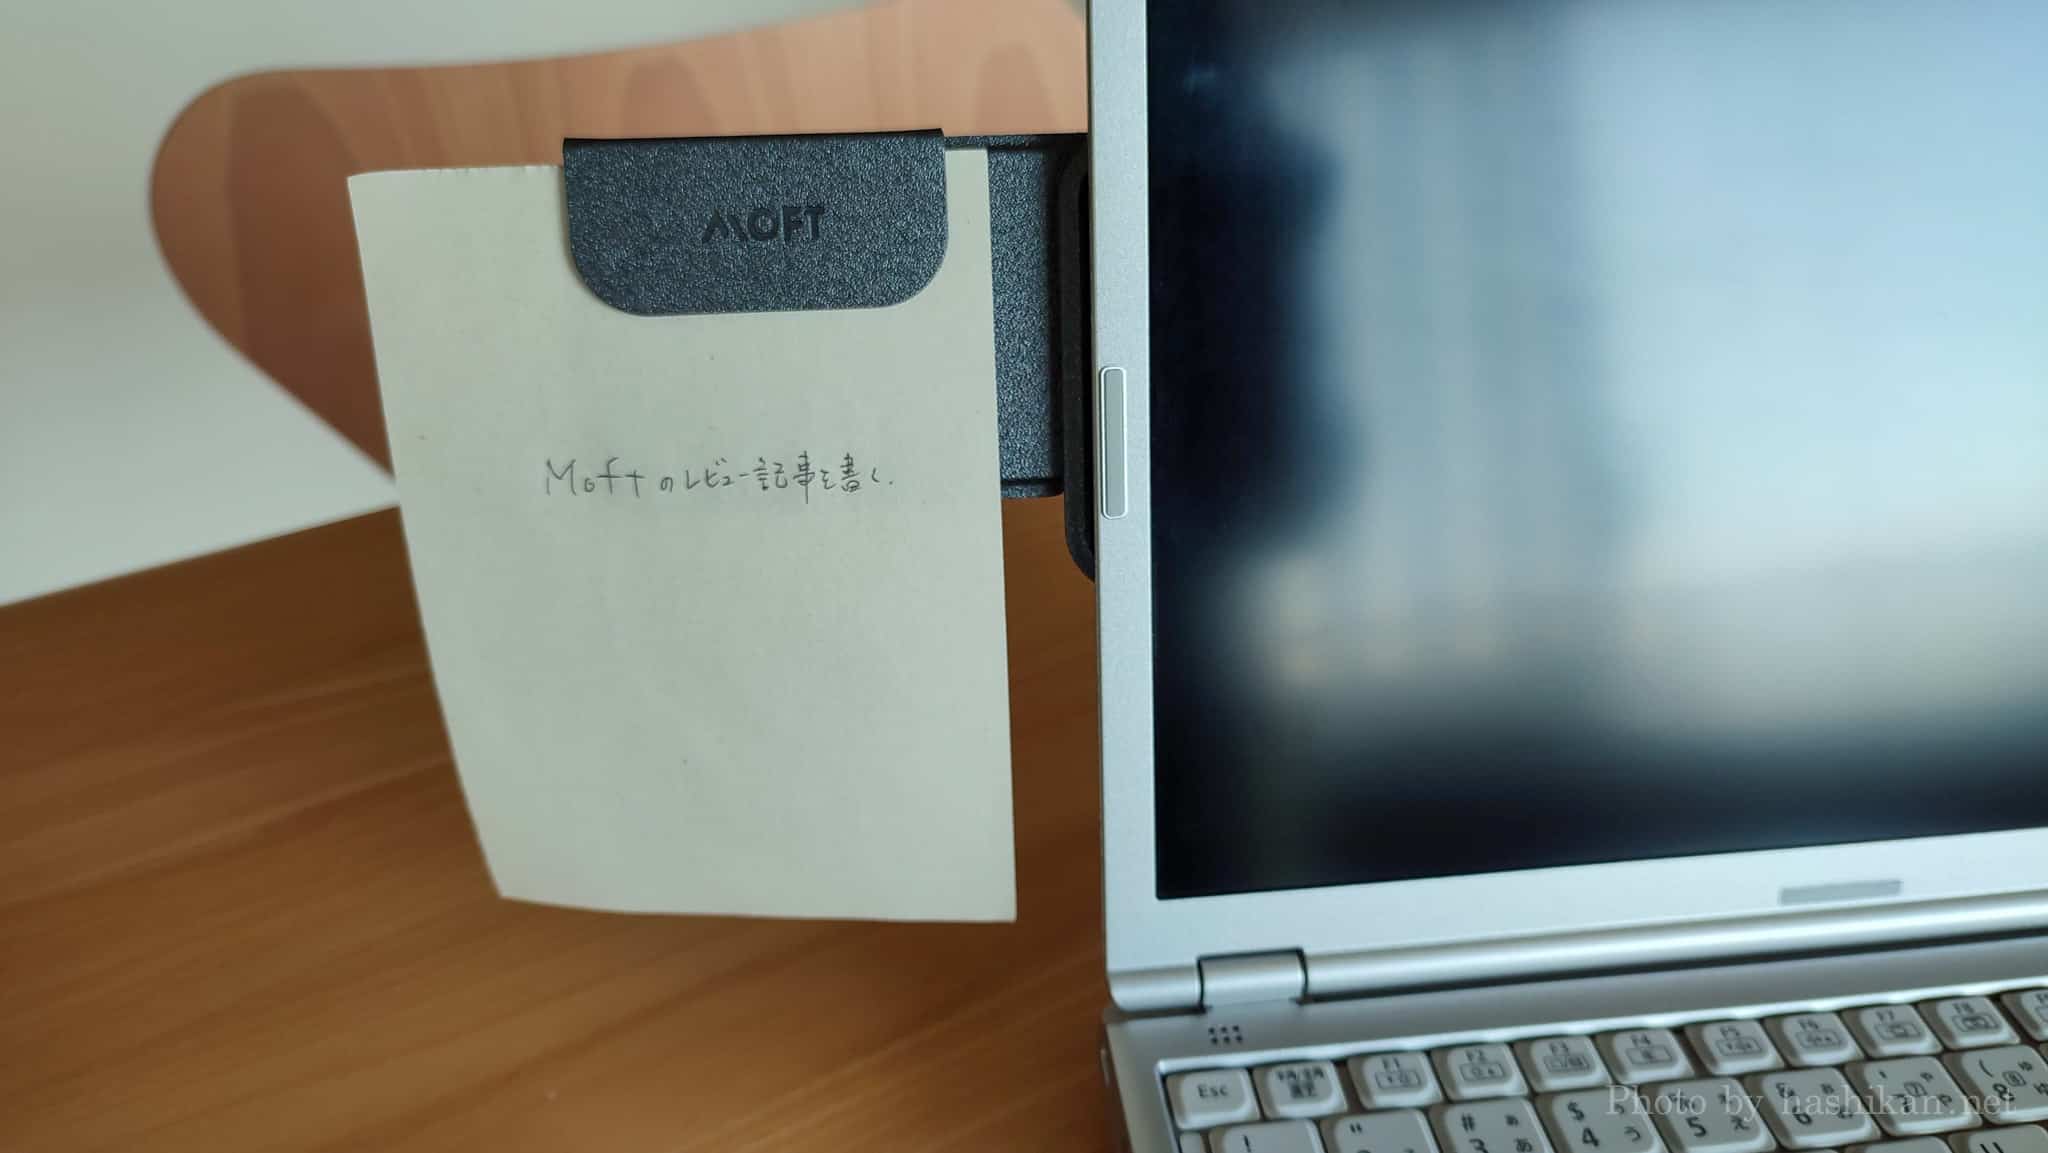 MOFT Snapノートパソコン用スマホホルダーを取り付けたLet's noteに、付属のミニパッドを使ってメモを貼り付けた状態の画像